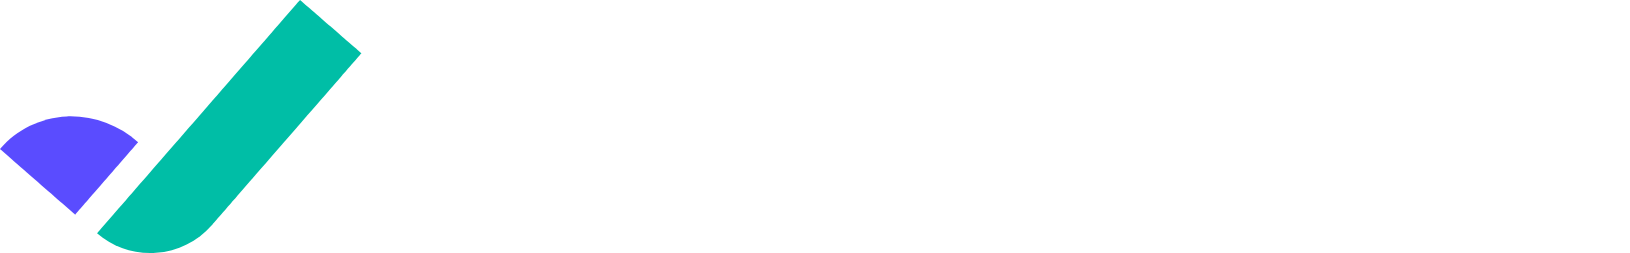 Riskified logo grand pour les fonds sombres (PNG transparent)